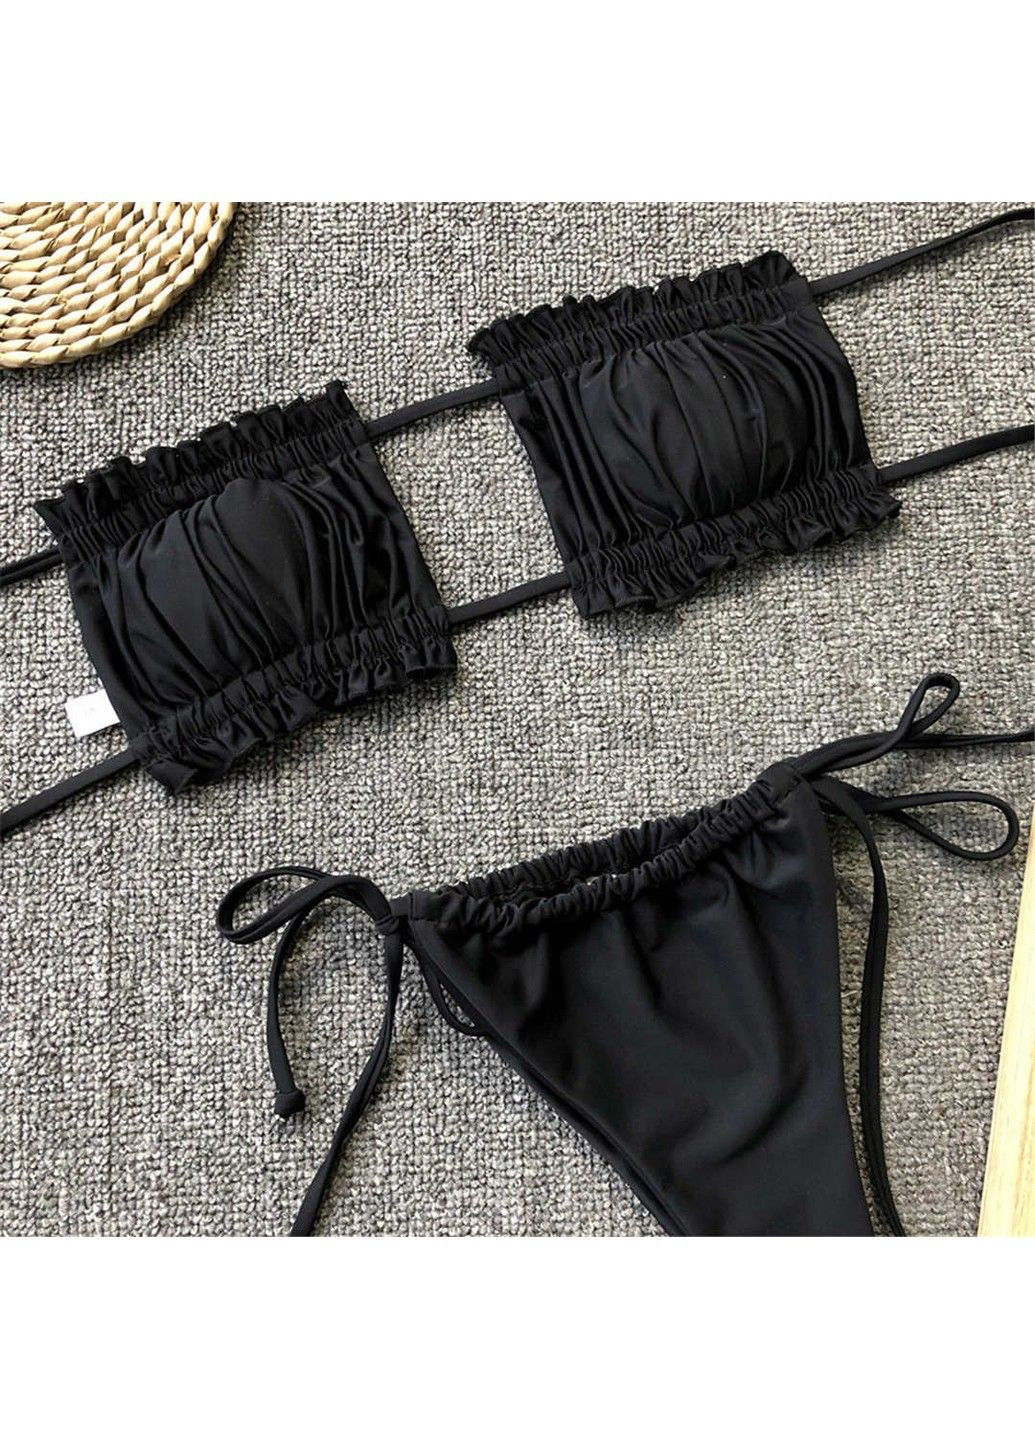 Черный купальник раздельный шторки с завязками черный No Brand